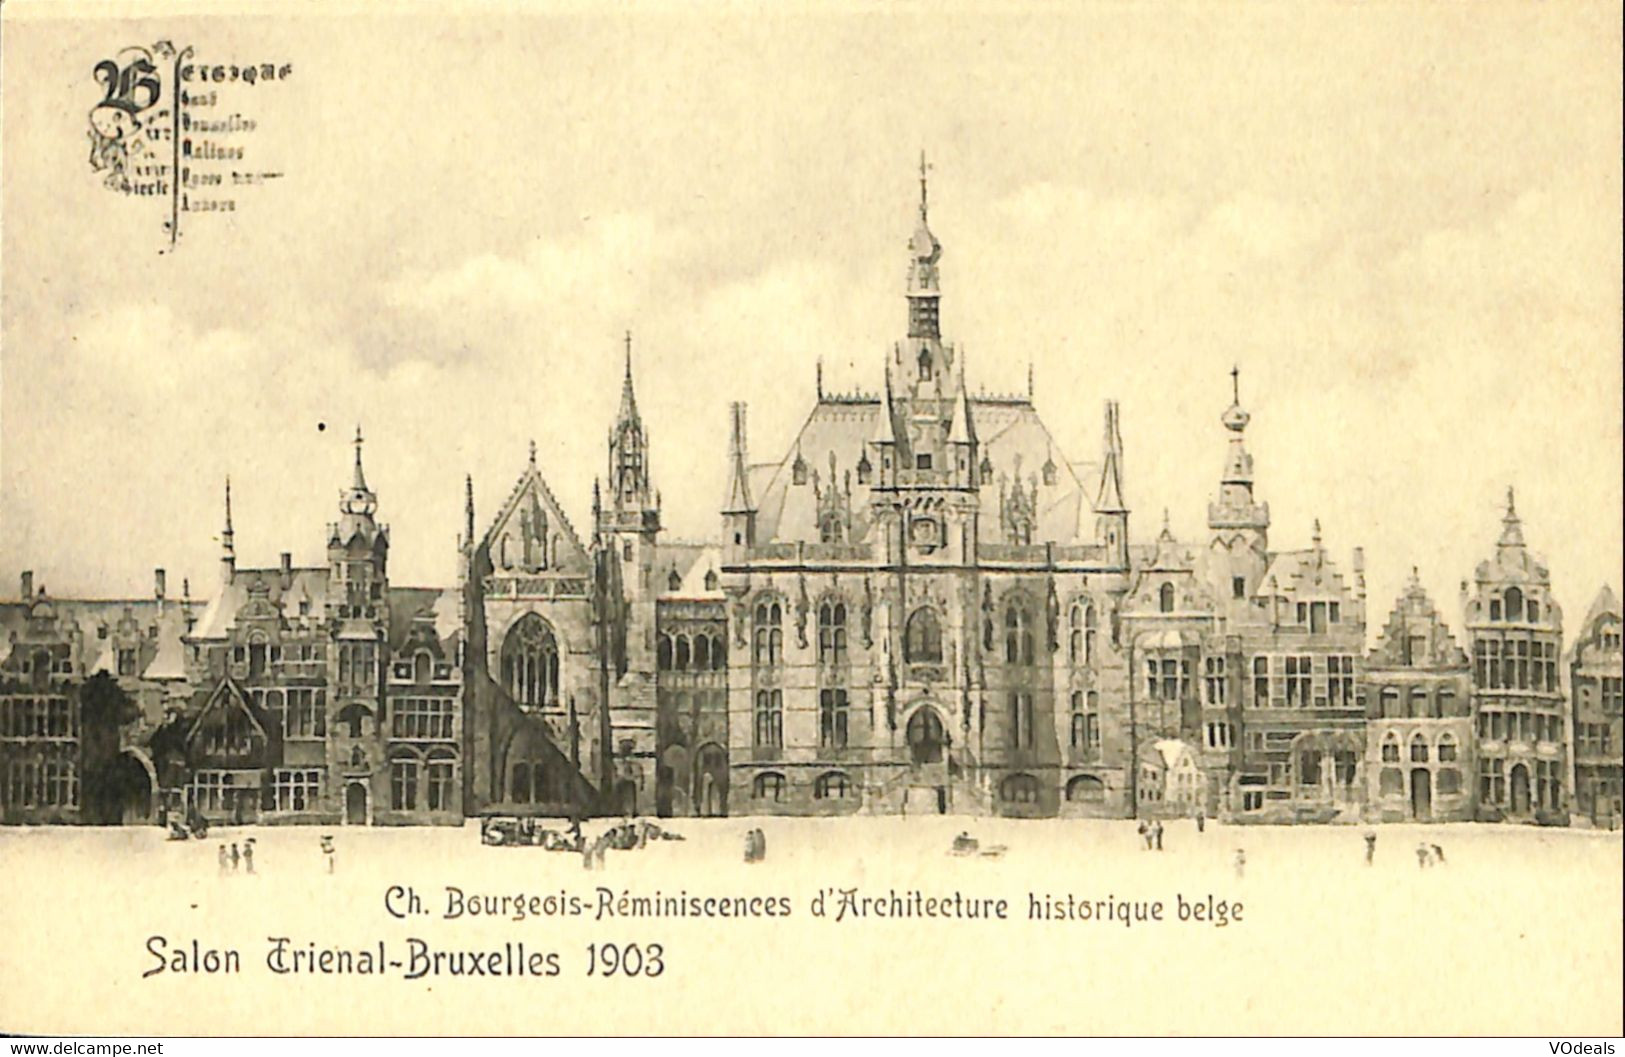 038 596 - CPA - Belgique - Bruxelles - Salon Trienal-Bruxelles 1903 - Fêtes, événements